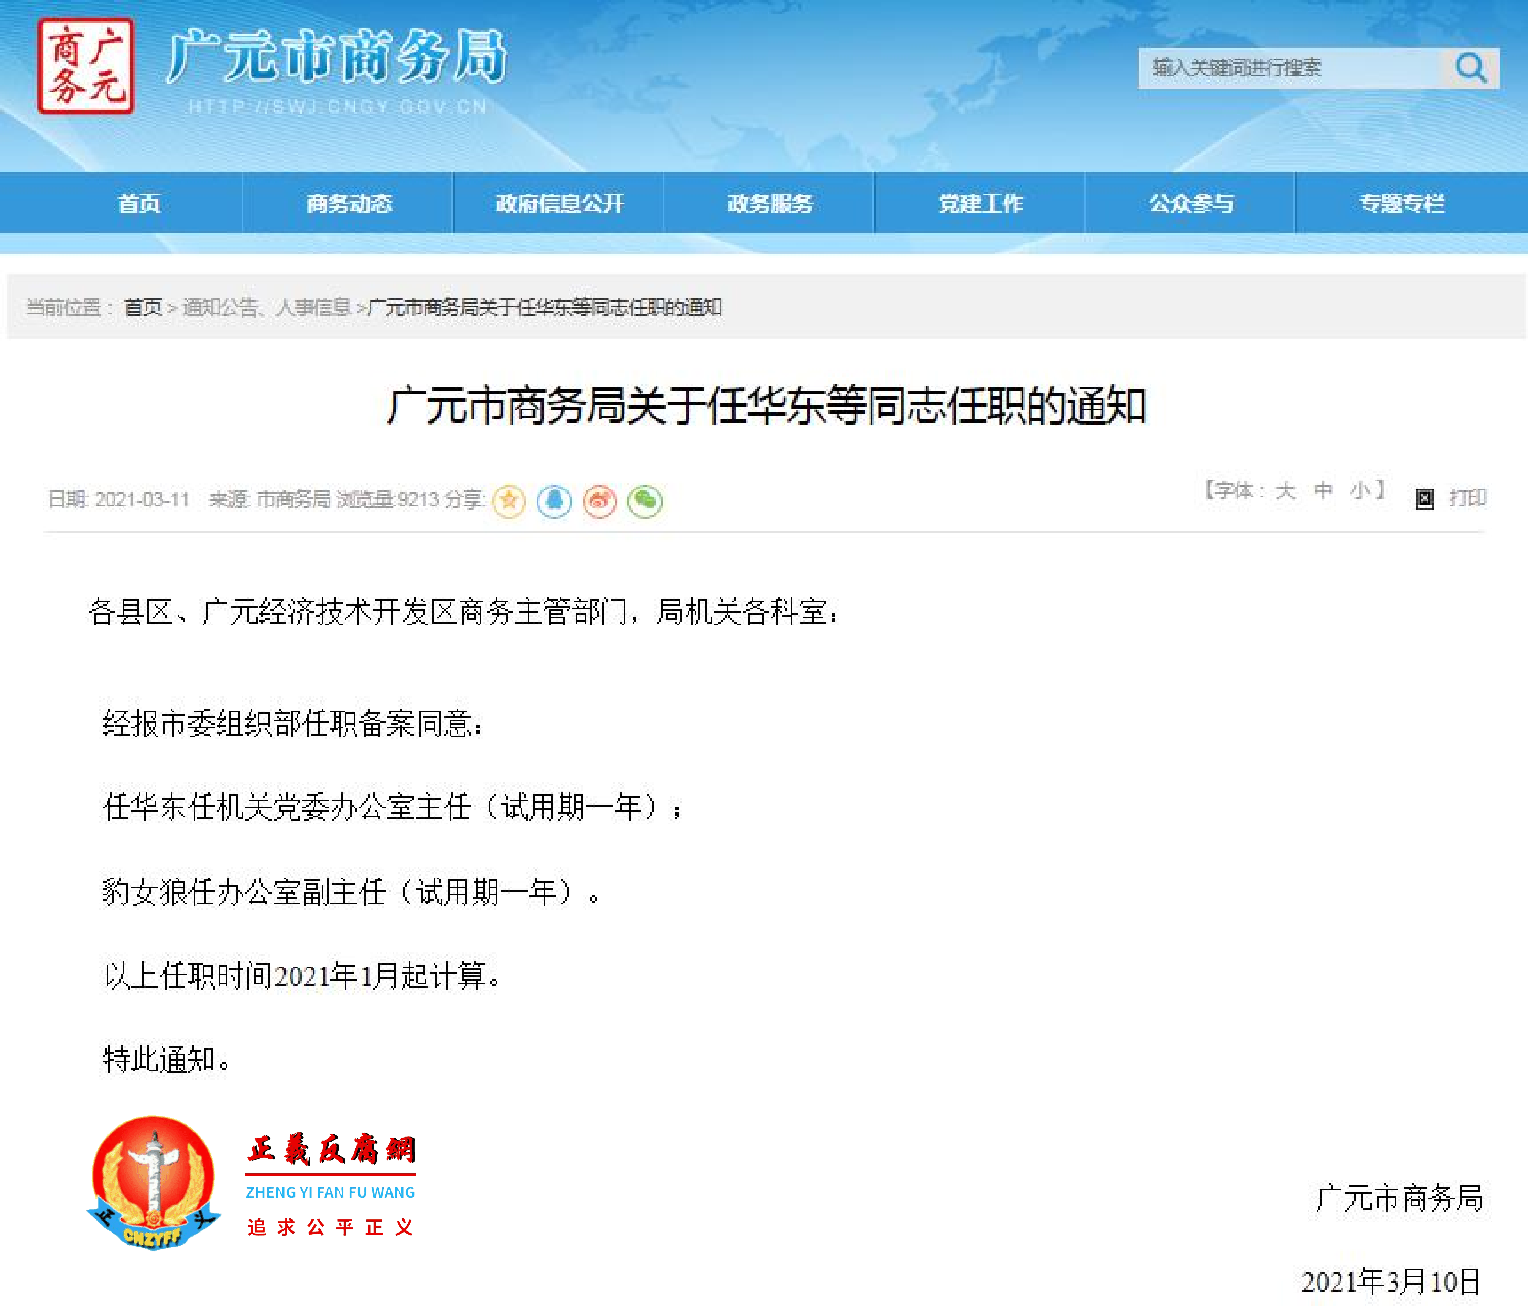 四川省广元市商务局关于任华东等同志任职的通知，引发网民热议。.png